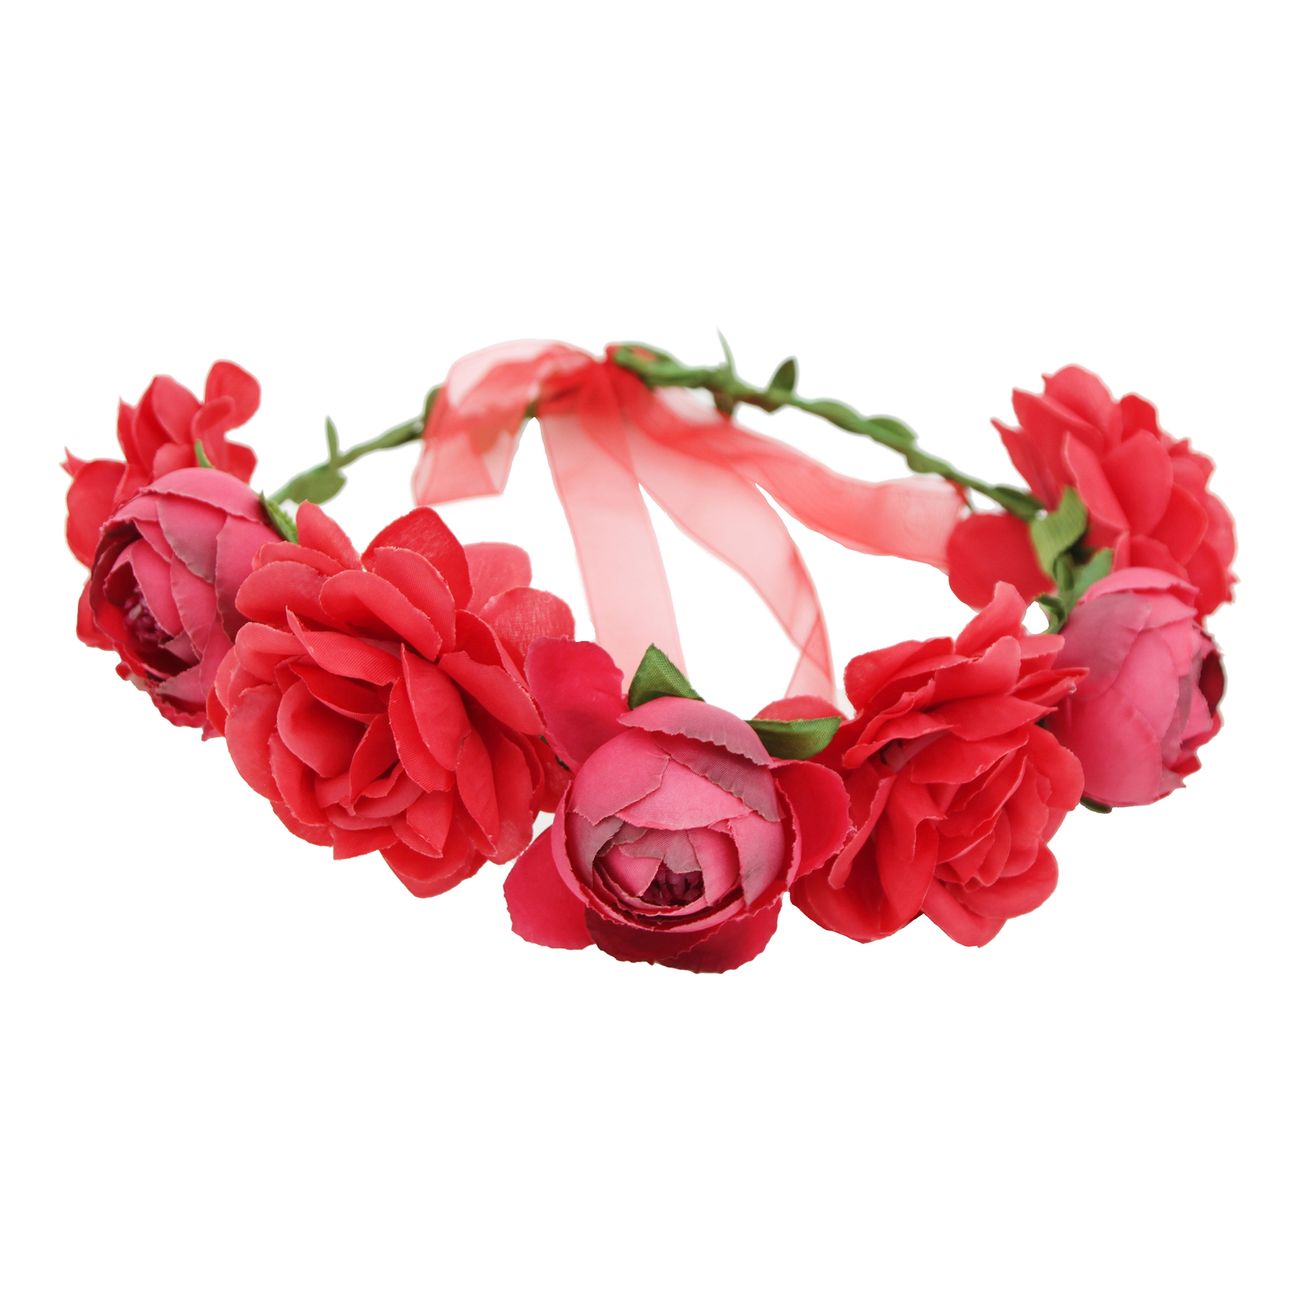 blomsterkrans-med-roda-rosor-93478-1